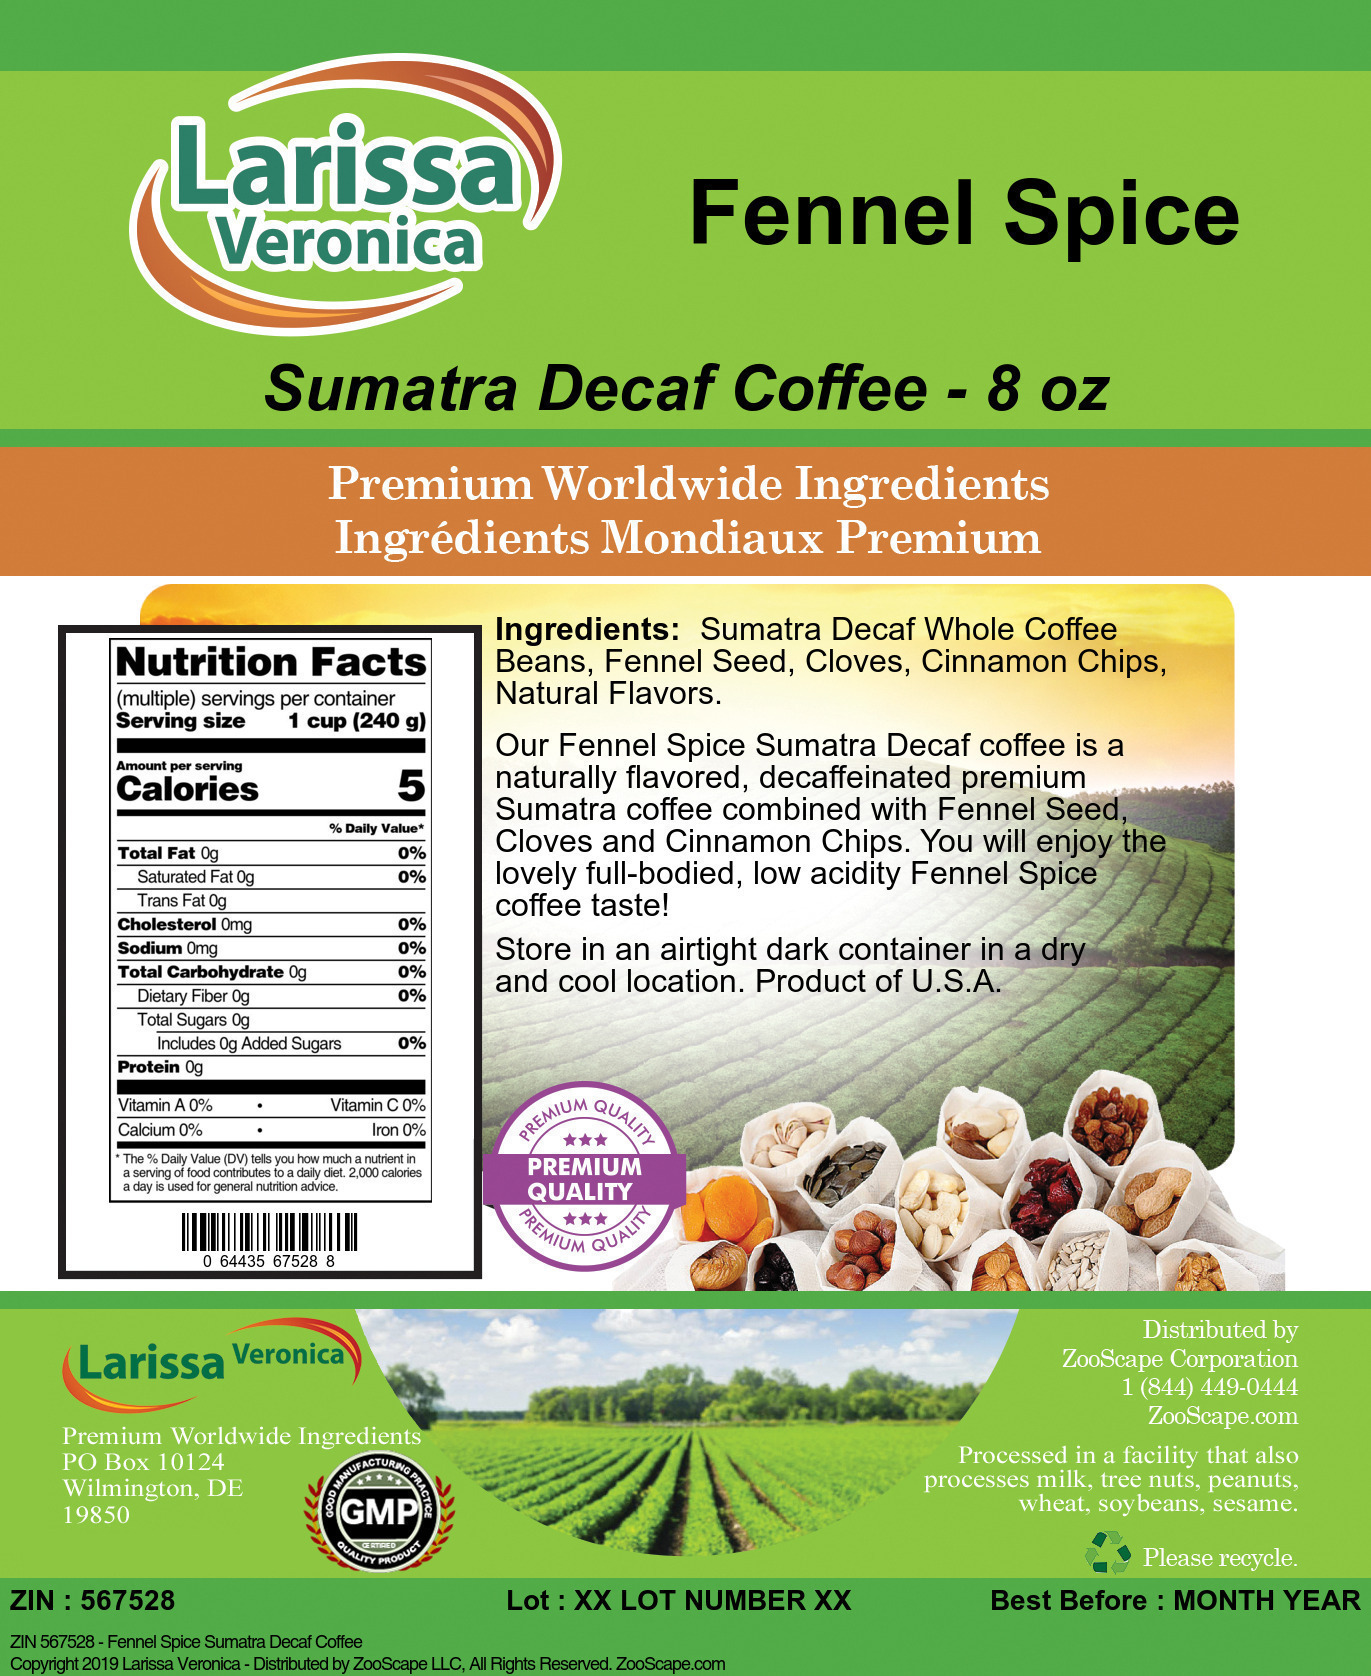 Fennel Spice Sumatra Decaf Coffee - Label